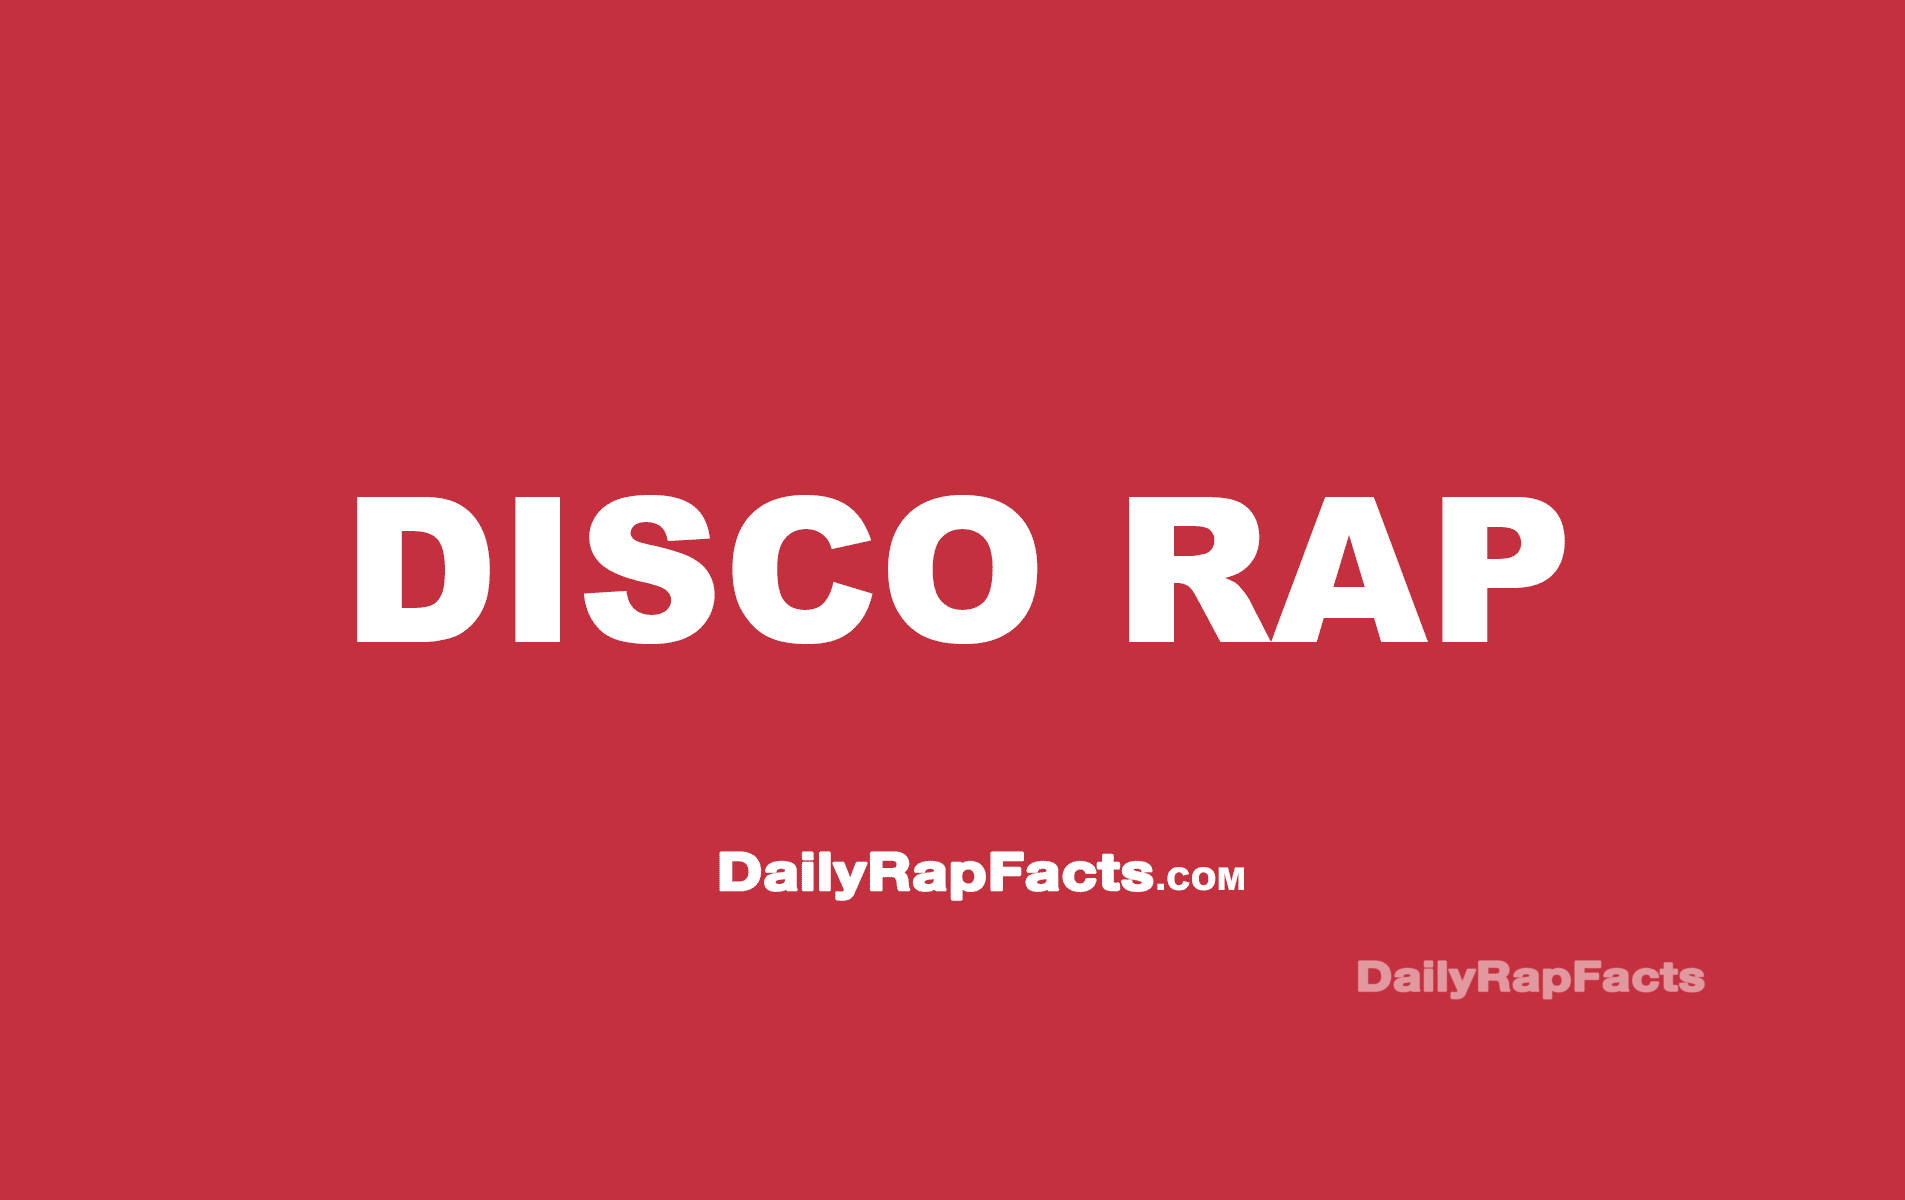 Hip-Hop was originally called “Disco Rap”